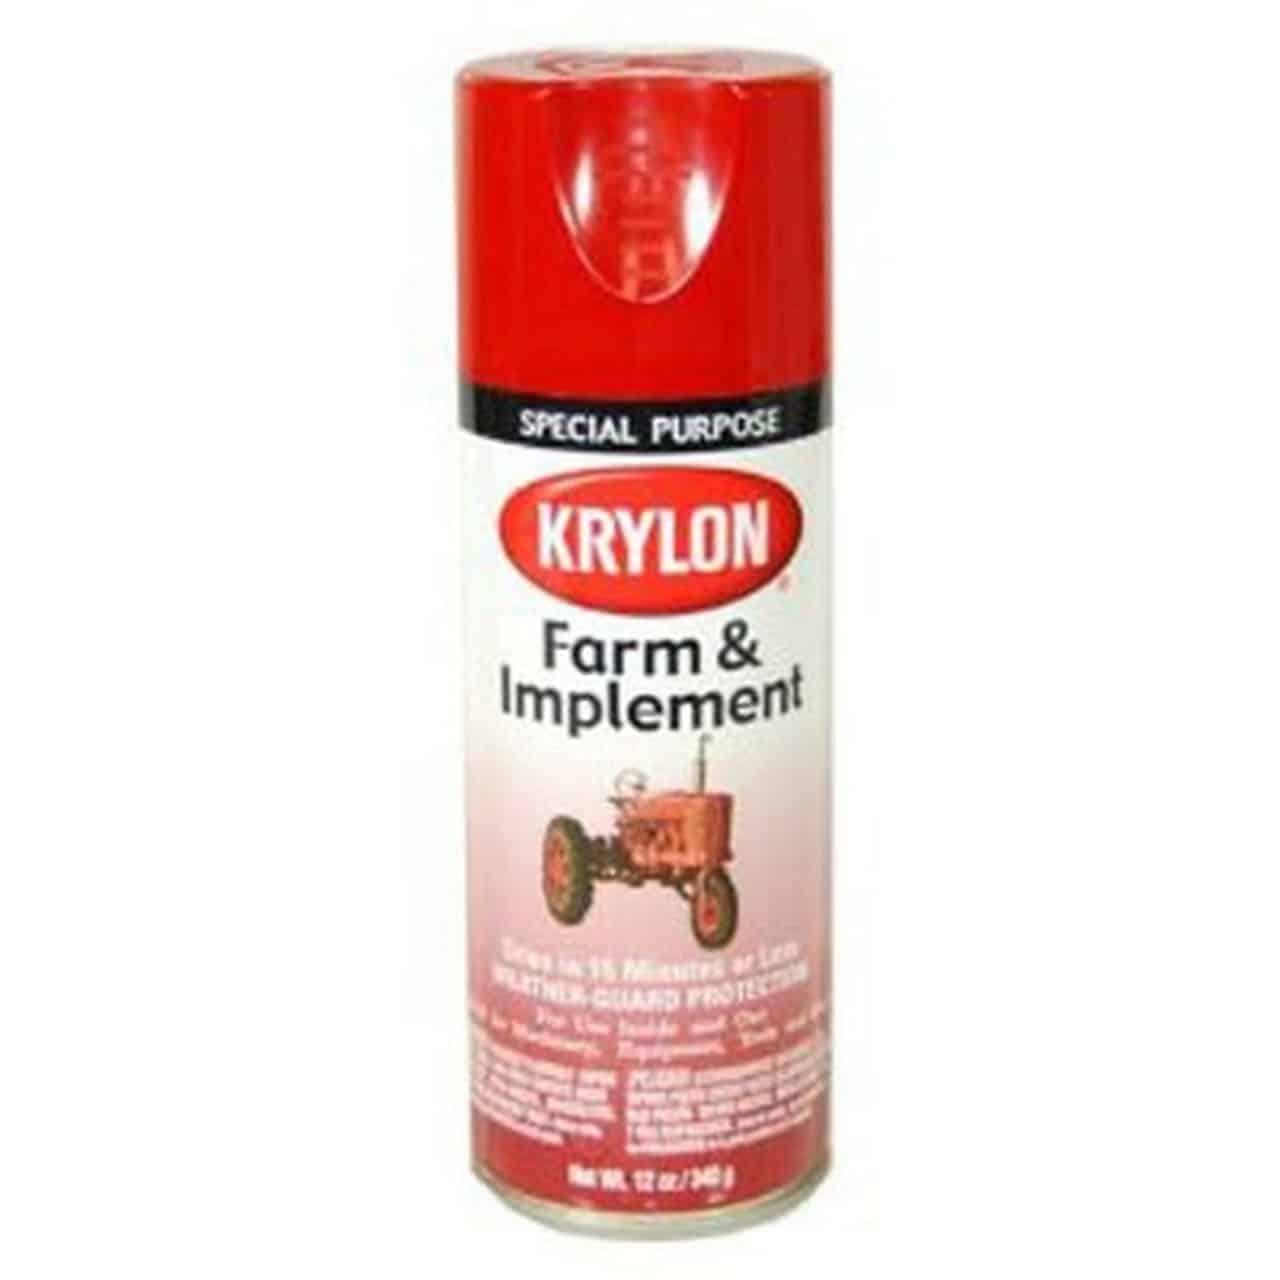 Krylon Paint Farm & Implement DUP41933